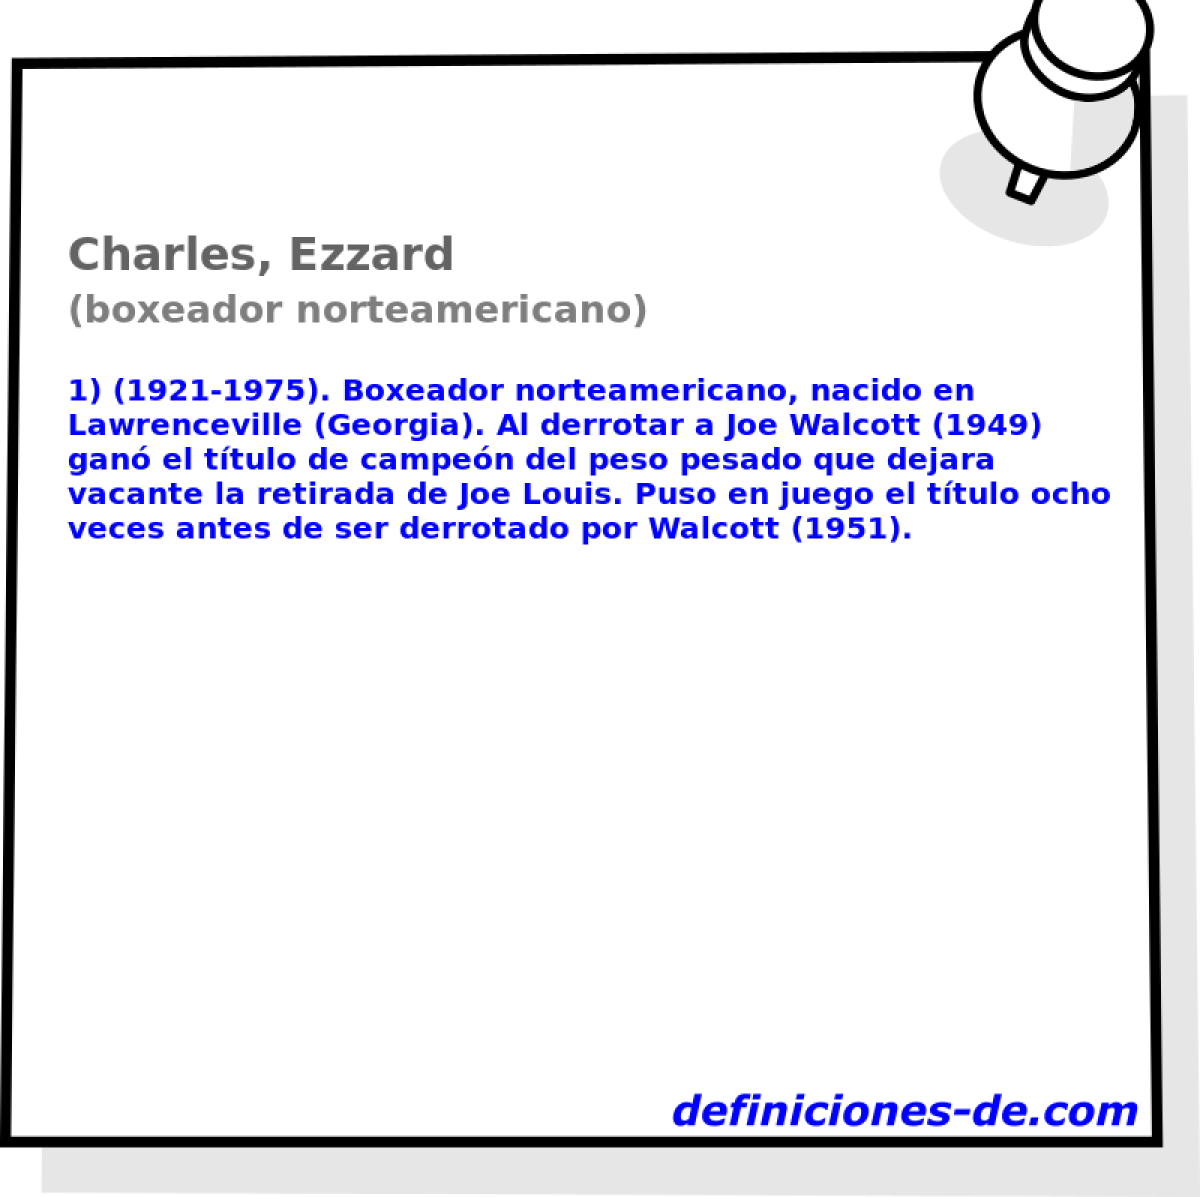 Charles, Ezzard (boxeador norteamericano)